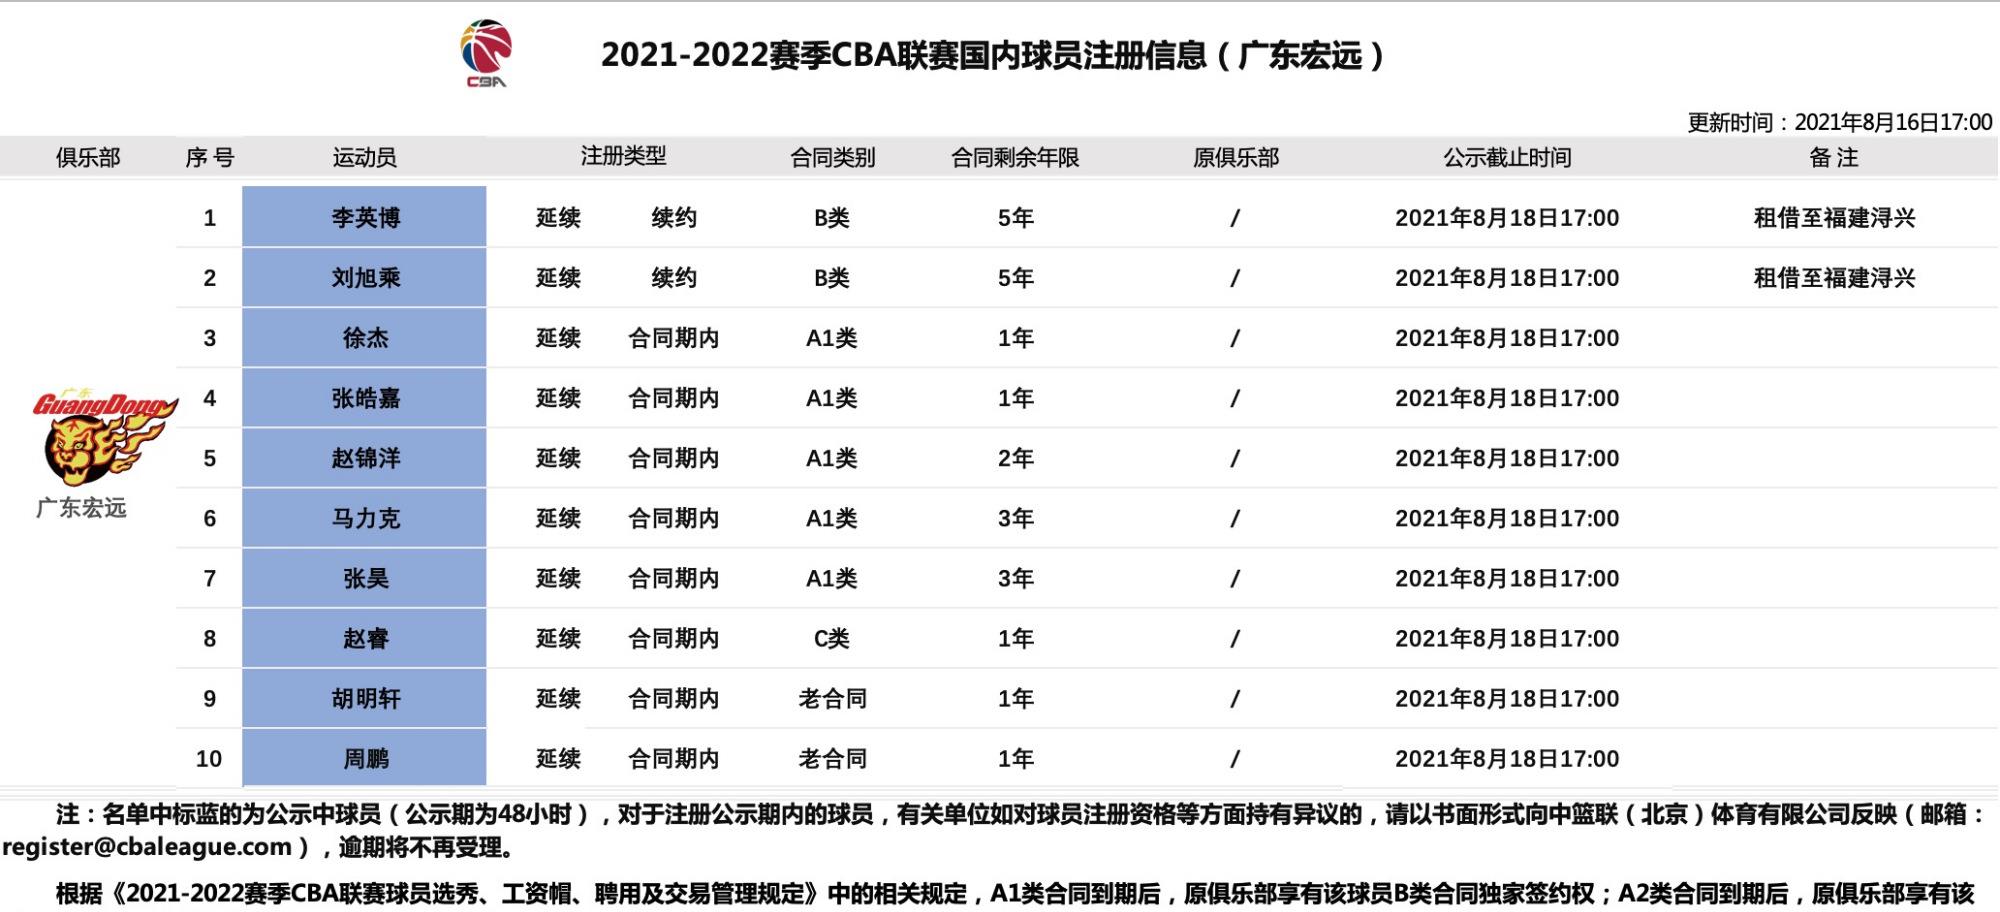 cba三消息:辽宁锁定新外援,全运会赛程出炉,广东注册10名球员